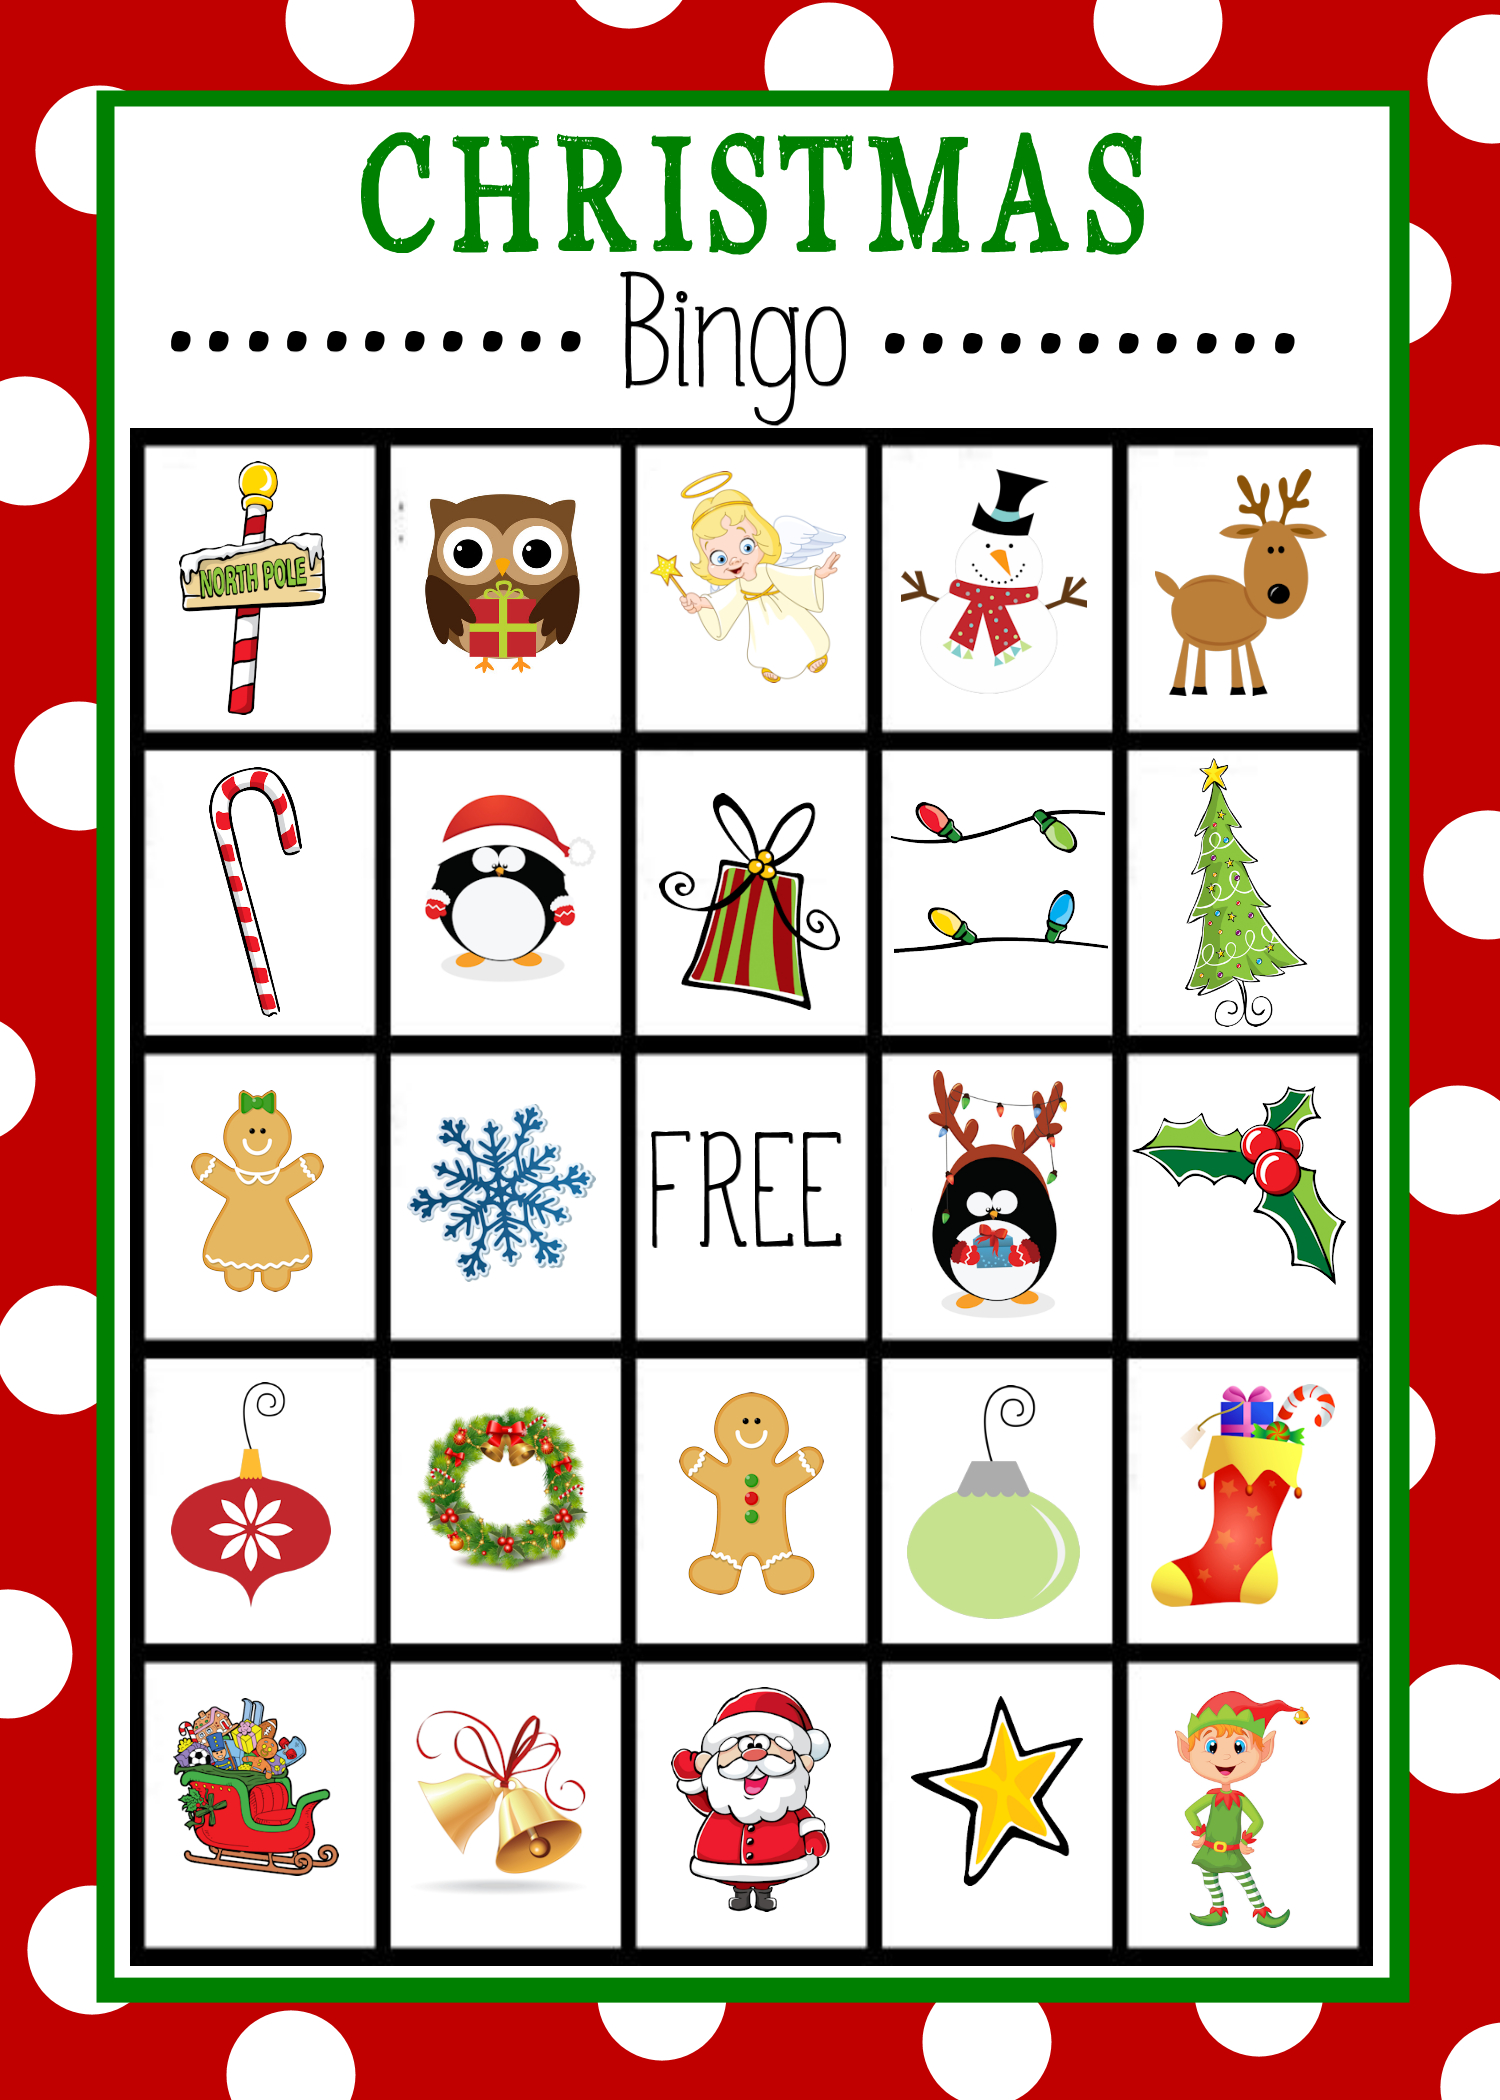 Free Printable Christmas Bingo Game | Christmas | Pinterest - Free Christmas Bingo Game Printable